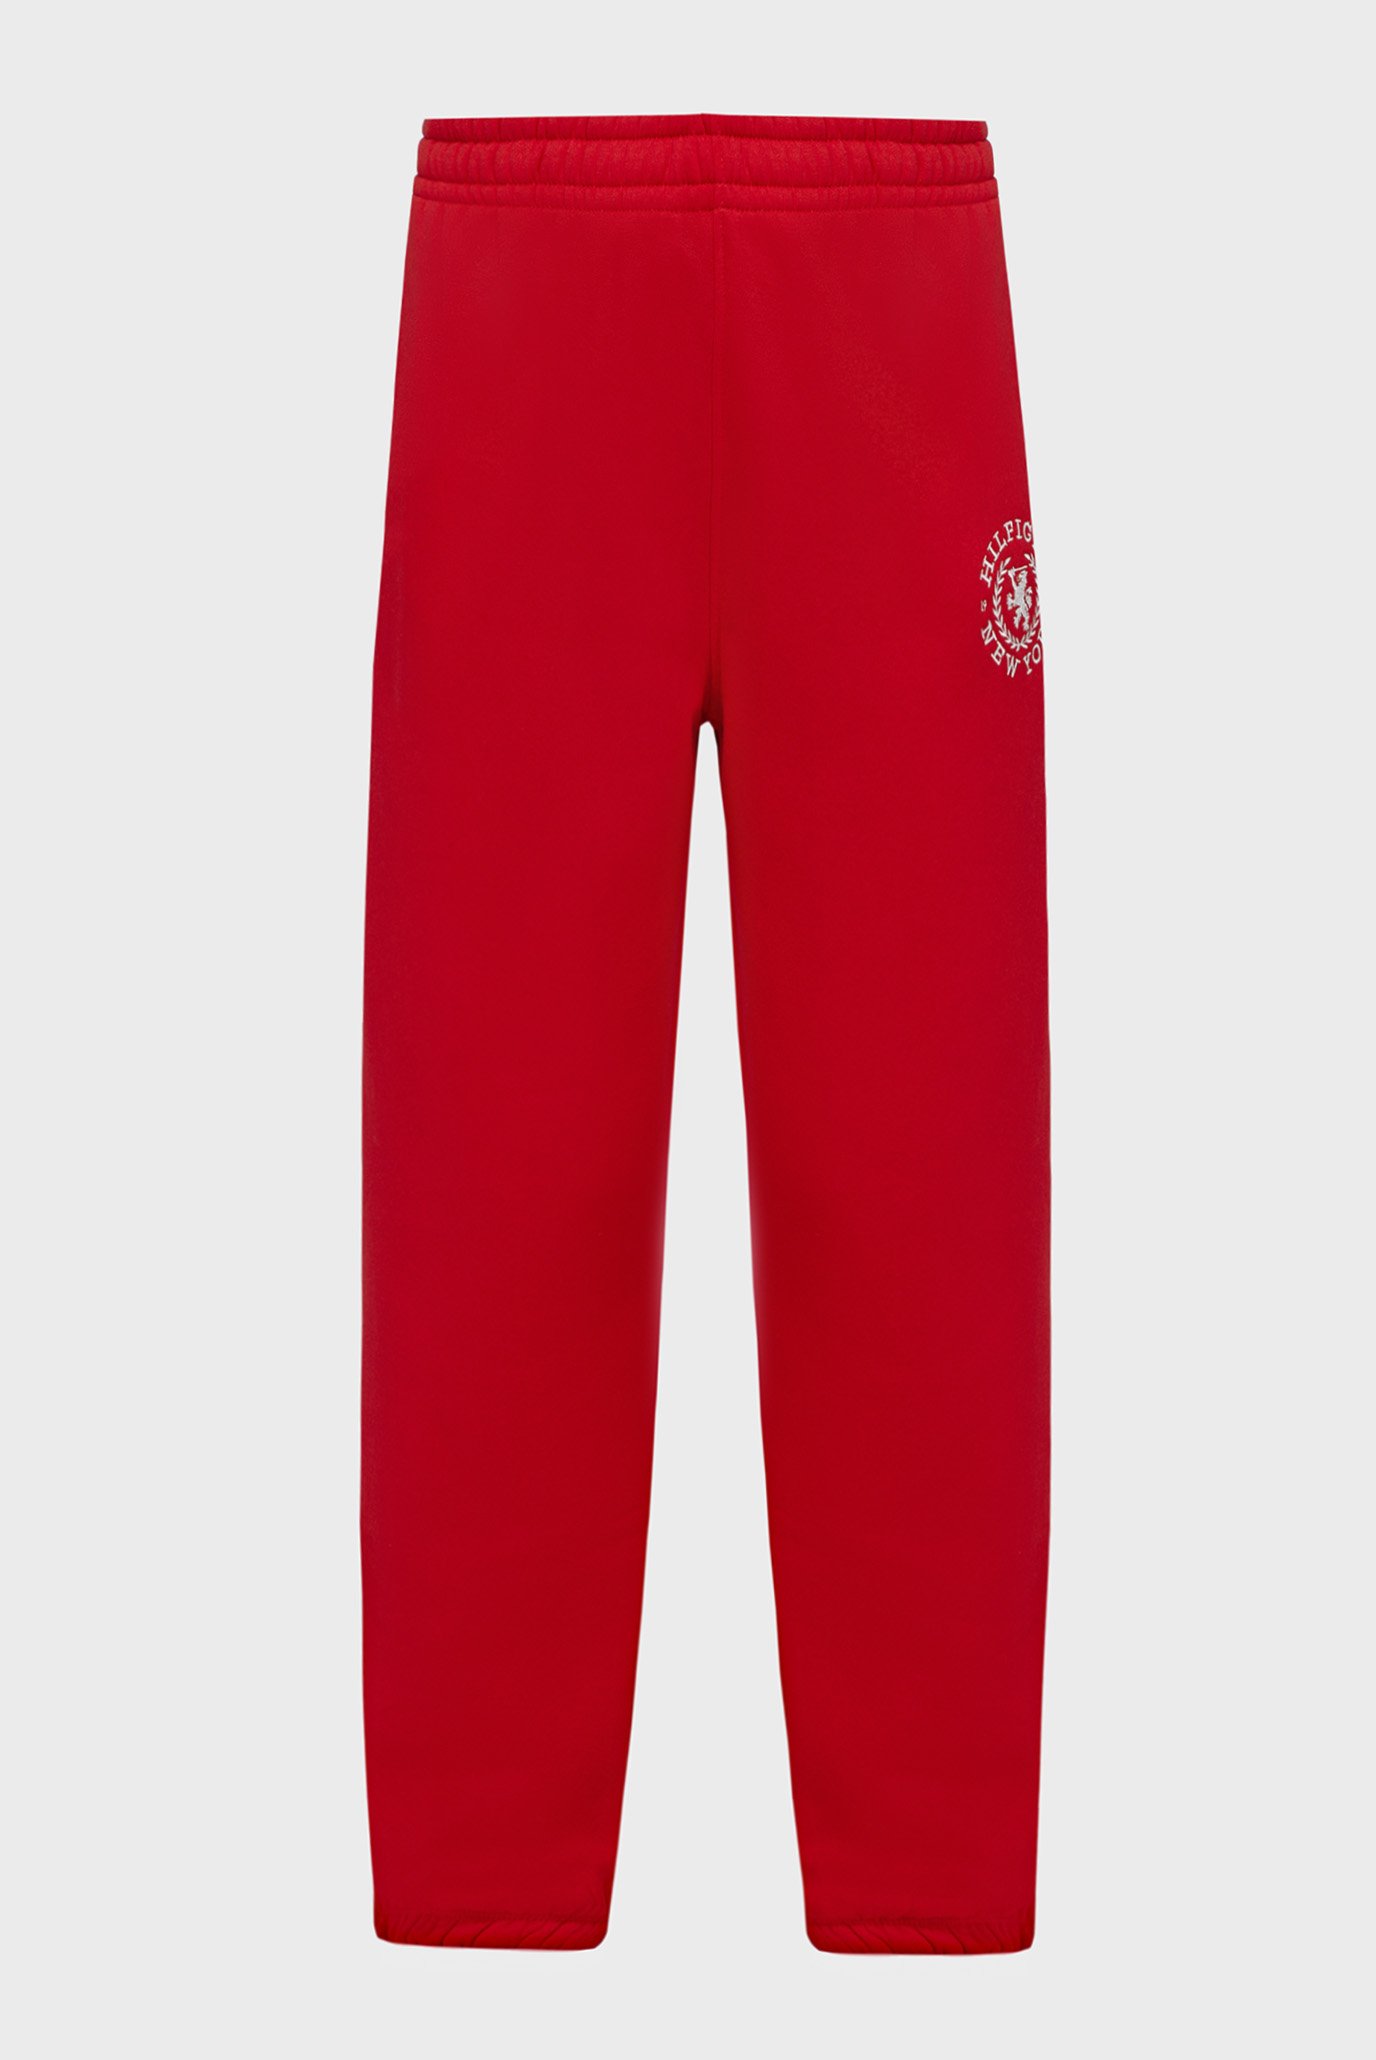 Женские красные спортивные брюки CREST SWEAT PANT 1